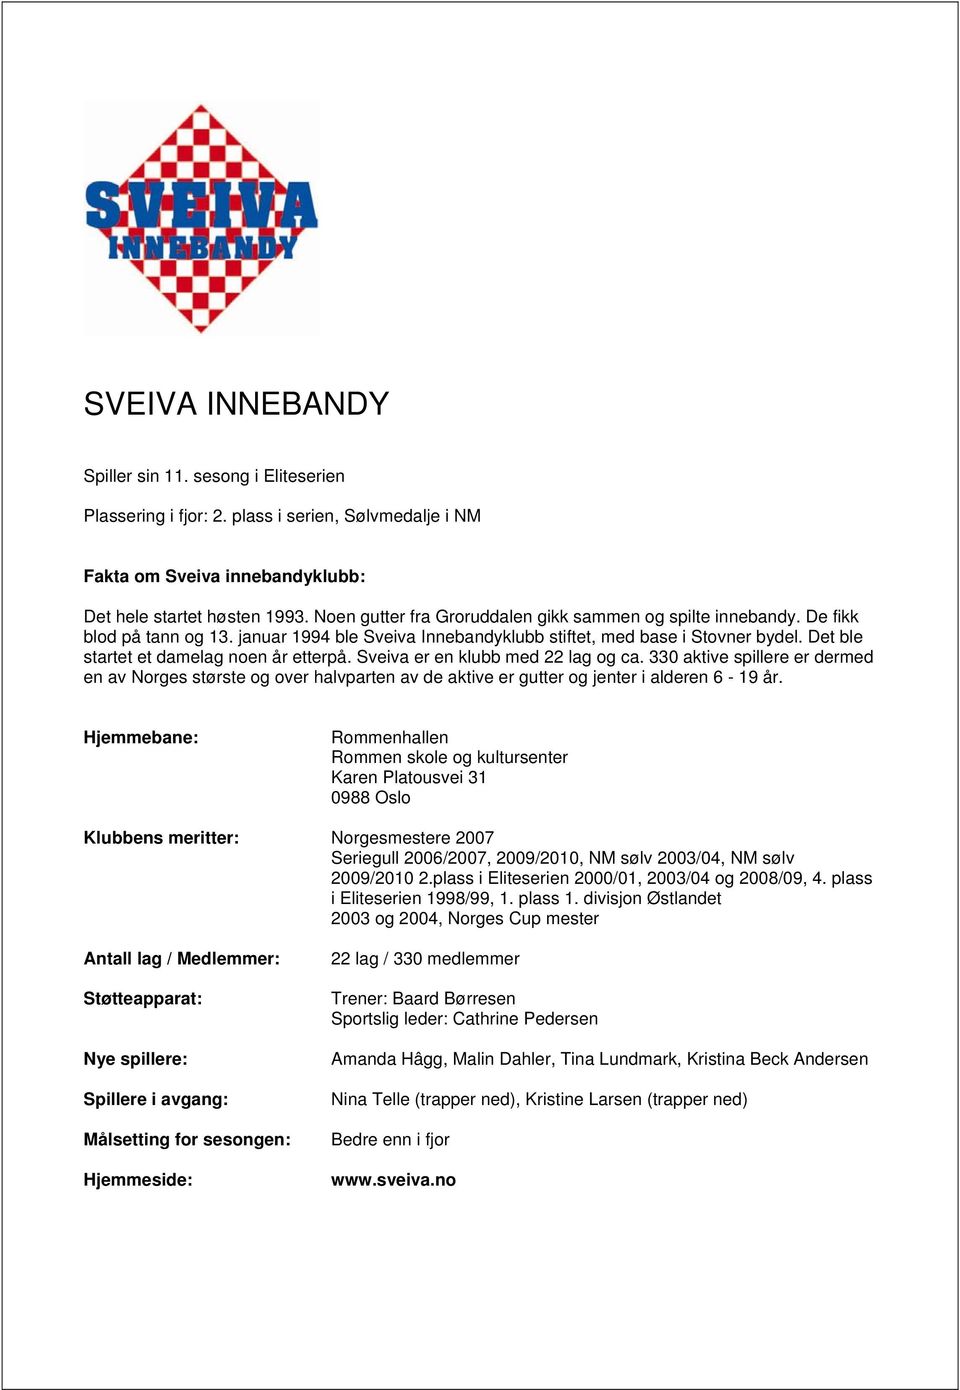 Det ble startet et damelag noen år etterpå. Sveiva er en klubb med 22 lag og ca.